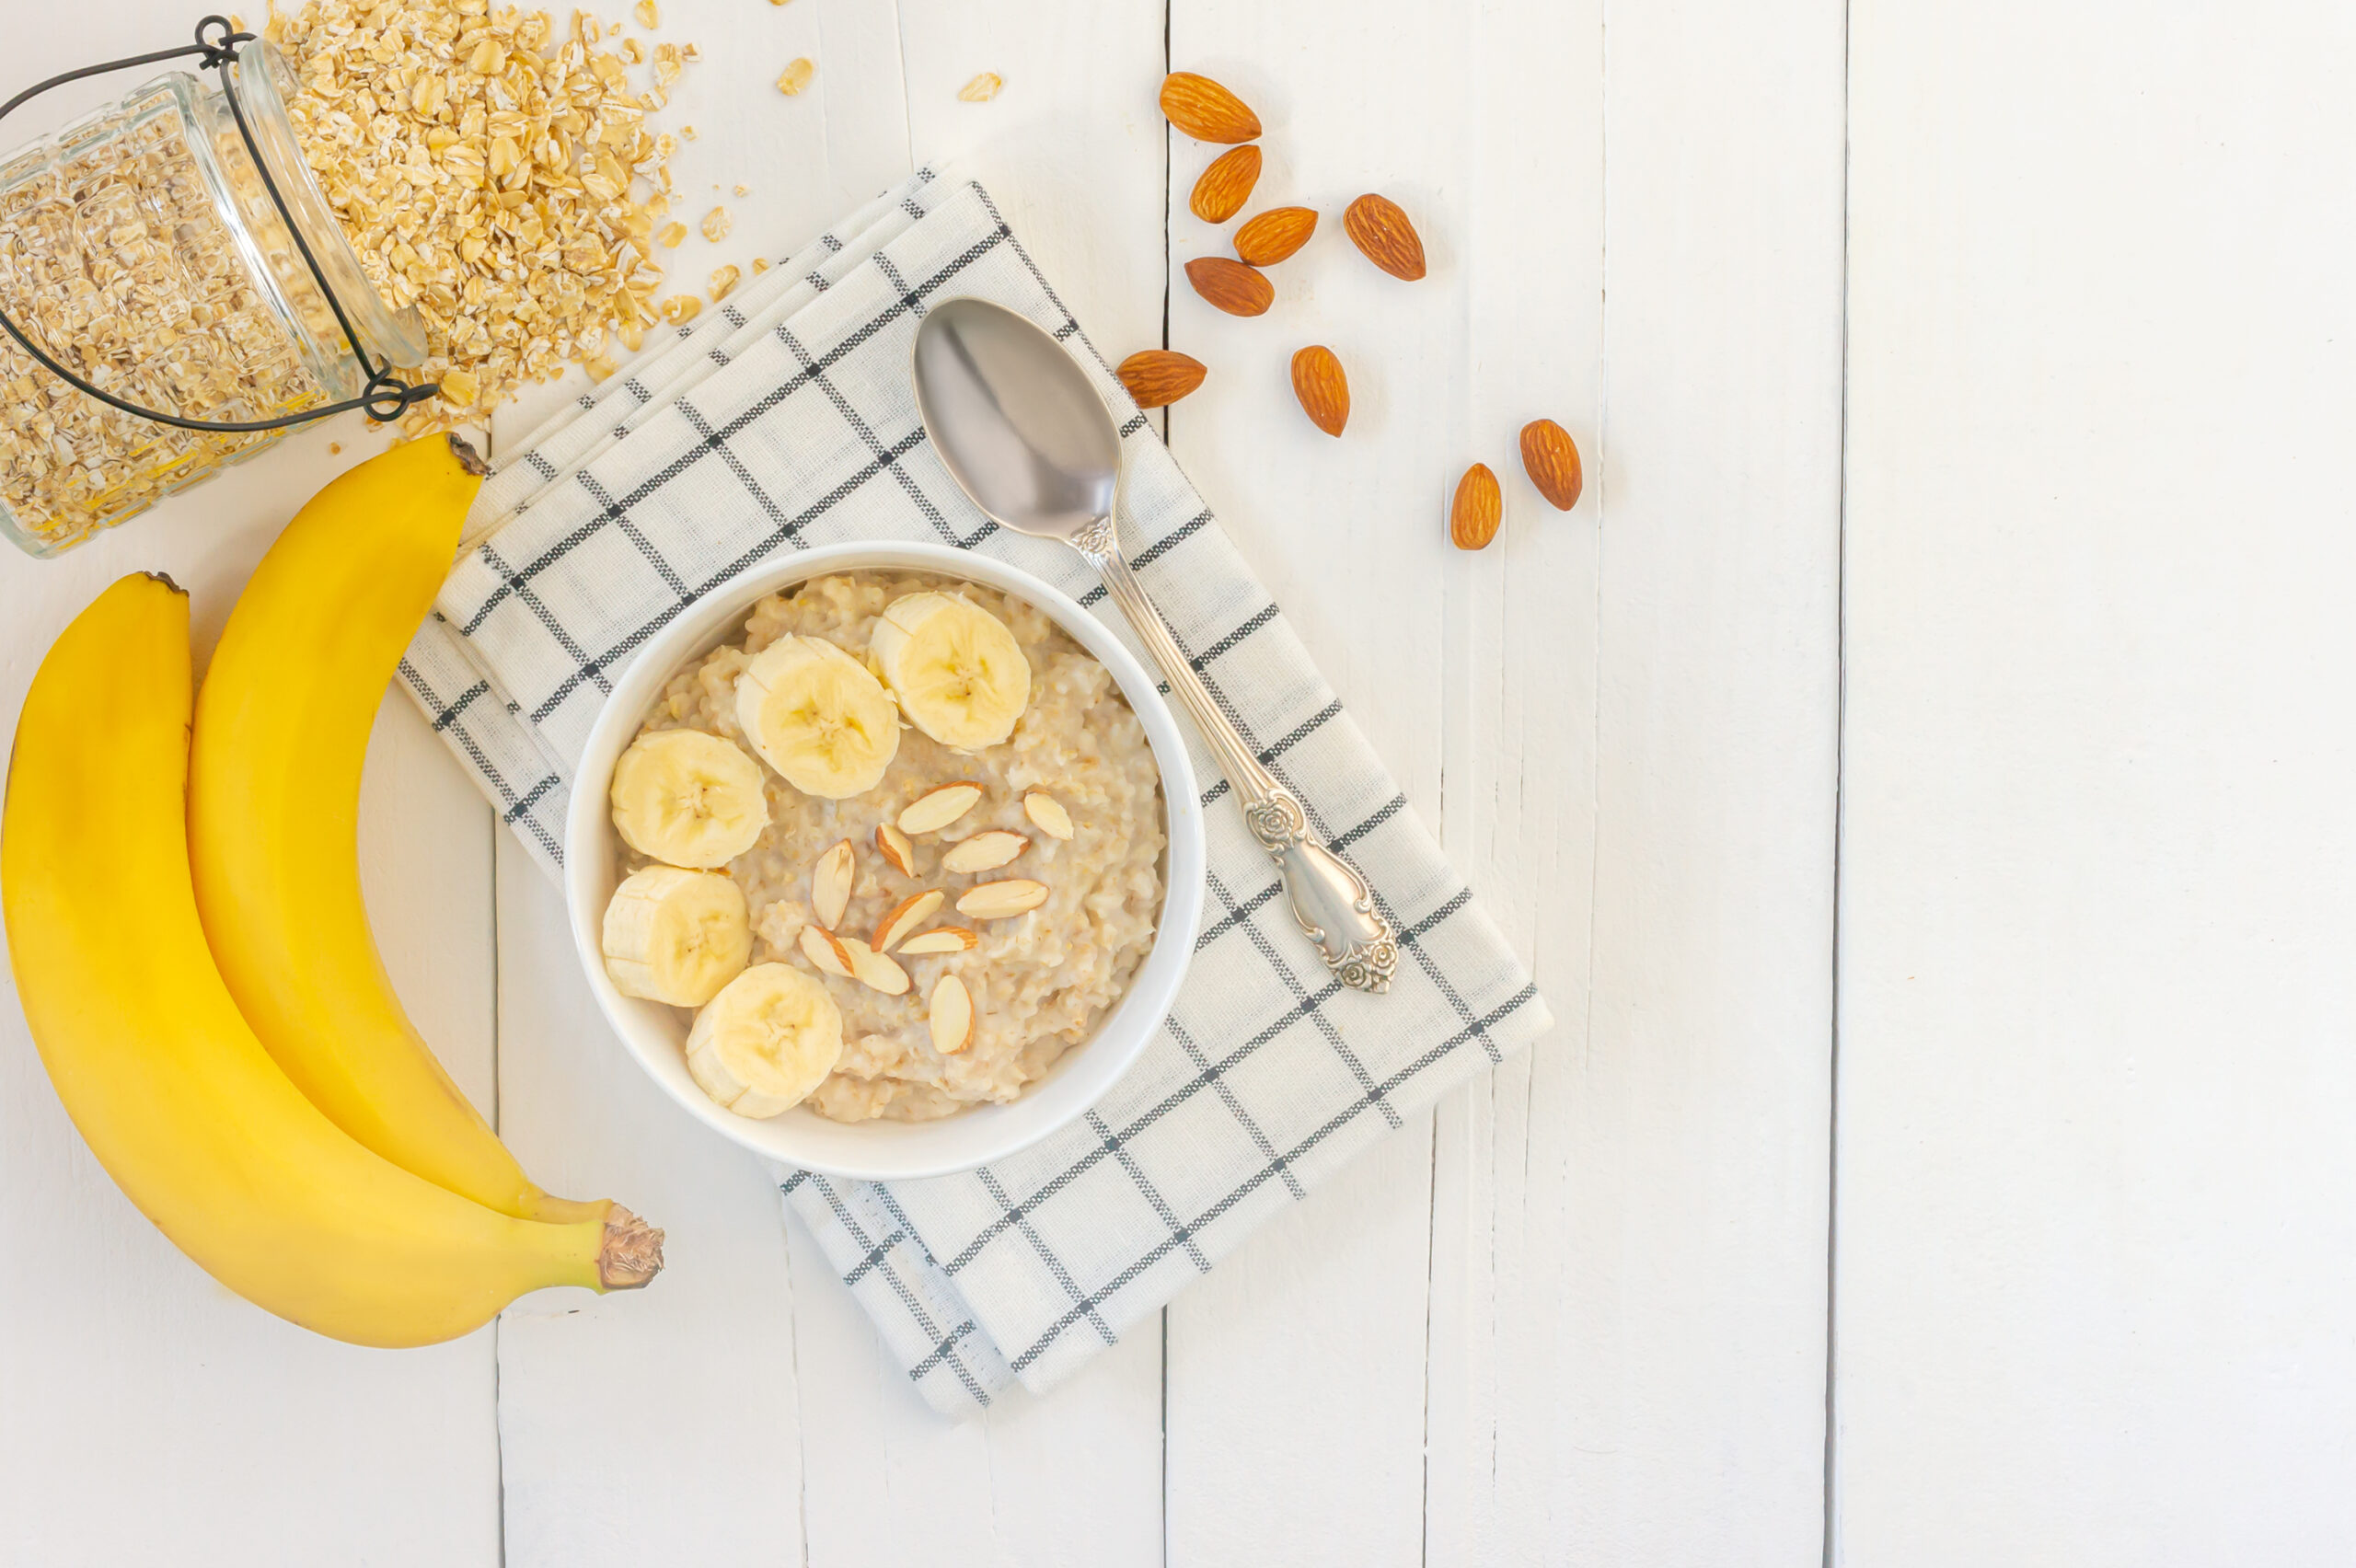 La confiture de banane à la vanille se déguste dès le petit déjeuner. Mélangez la confiture à des flacons d'avoine et régalez-vous! Côté dessert, ce sera avec le riz au lait!